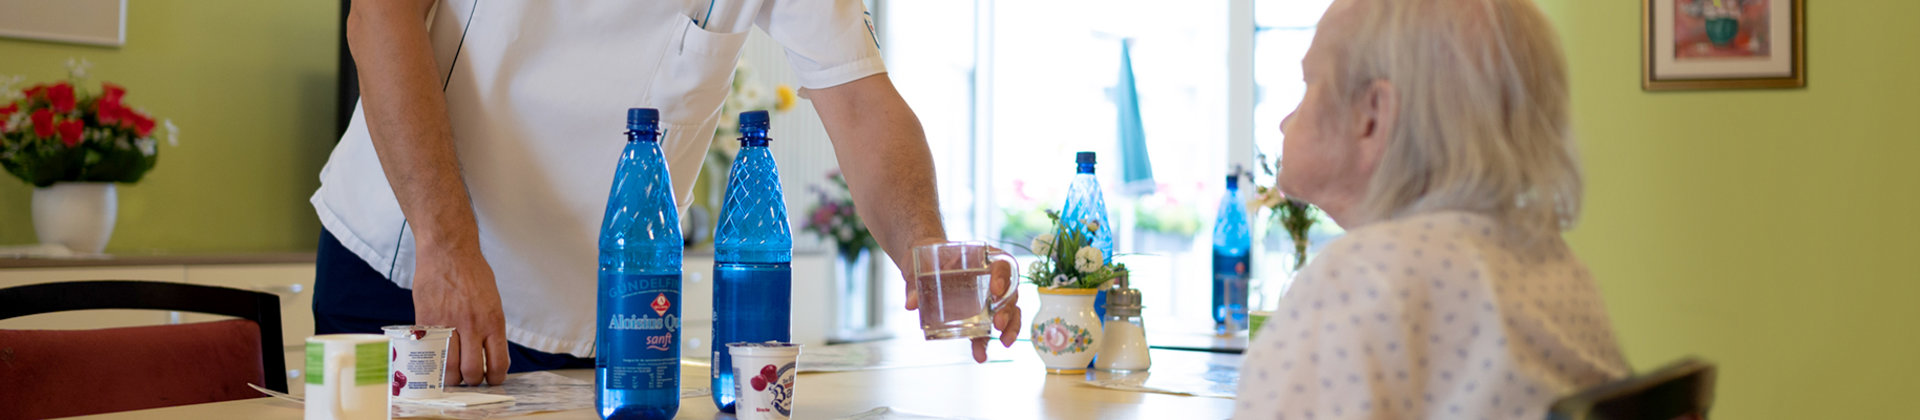 Bild | Pfleger reicht Seniorin ein Glas Wasser am Esstisch